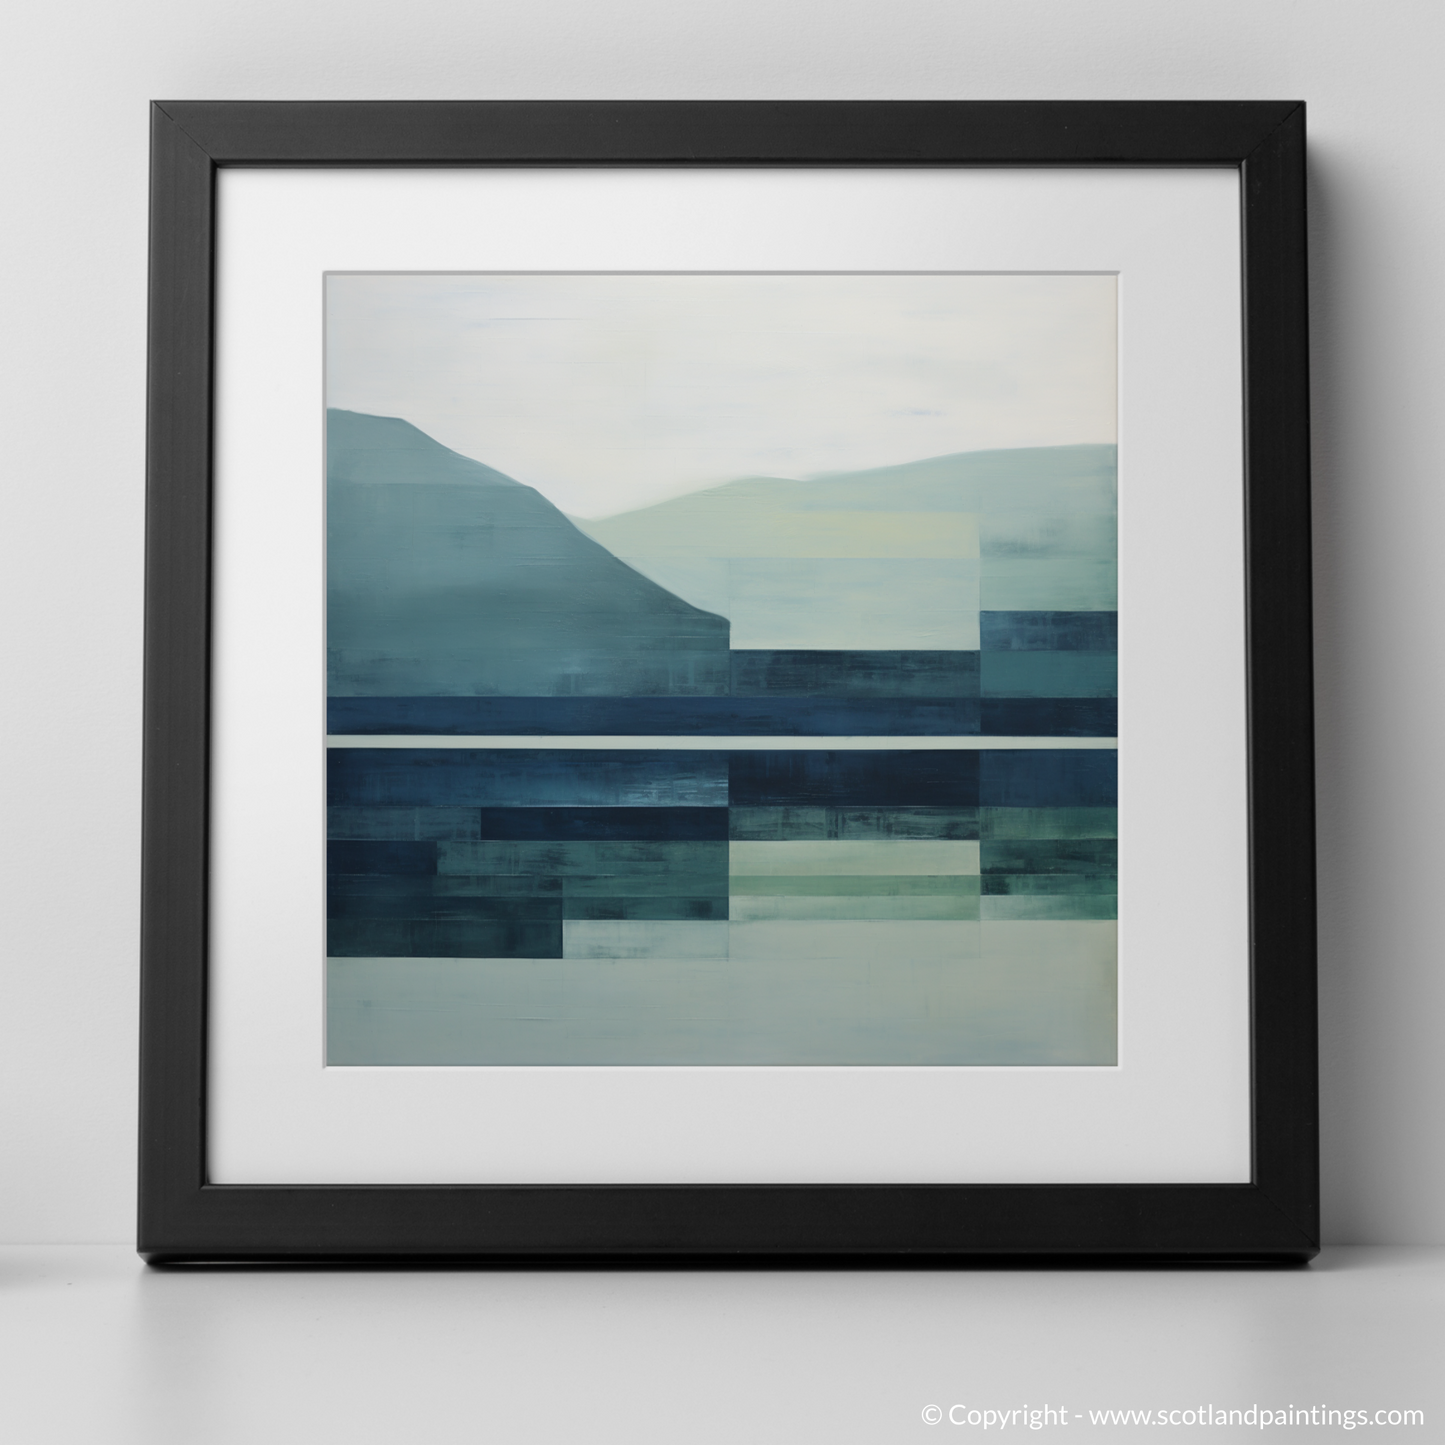 Highland Serenity: A Minimalist Ode to Loch Maree